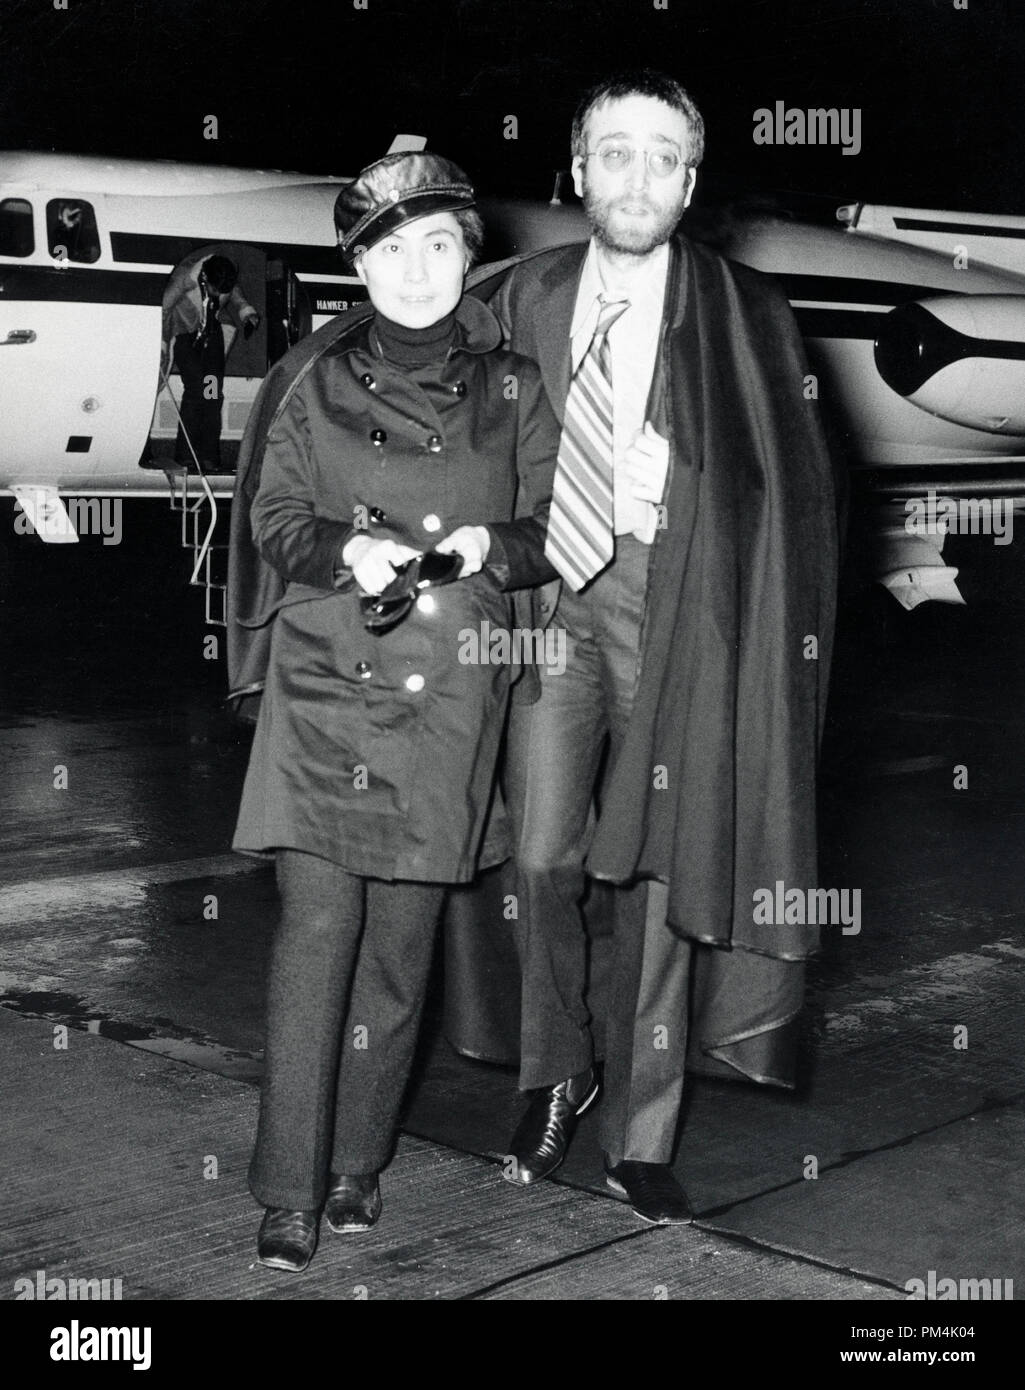 Beatle John Lennon mit Frau Yoko Ono, am Flughafen ankommen, 1970. Datei Referenz Nr. 1013 117 THA © GFS/Hollywood Archiv - Alle Rechte vorbehalten. Stockfoto